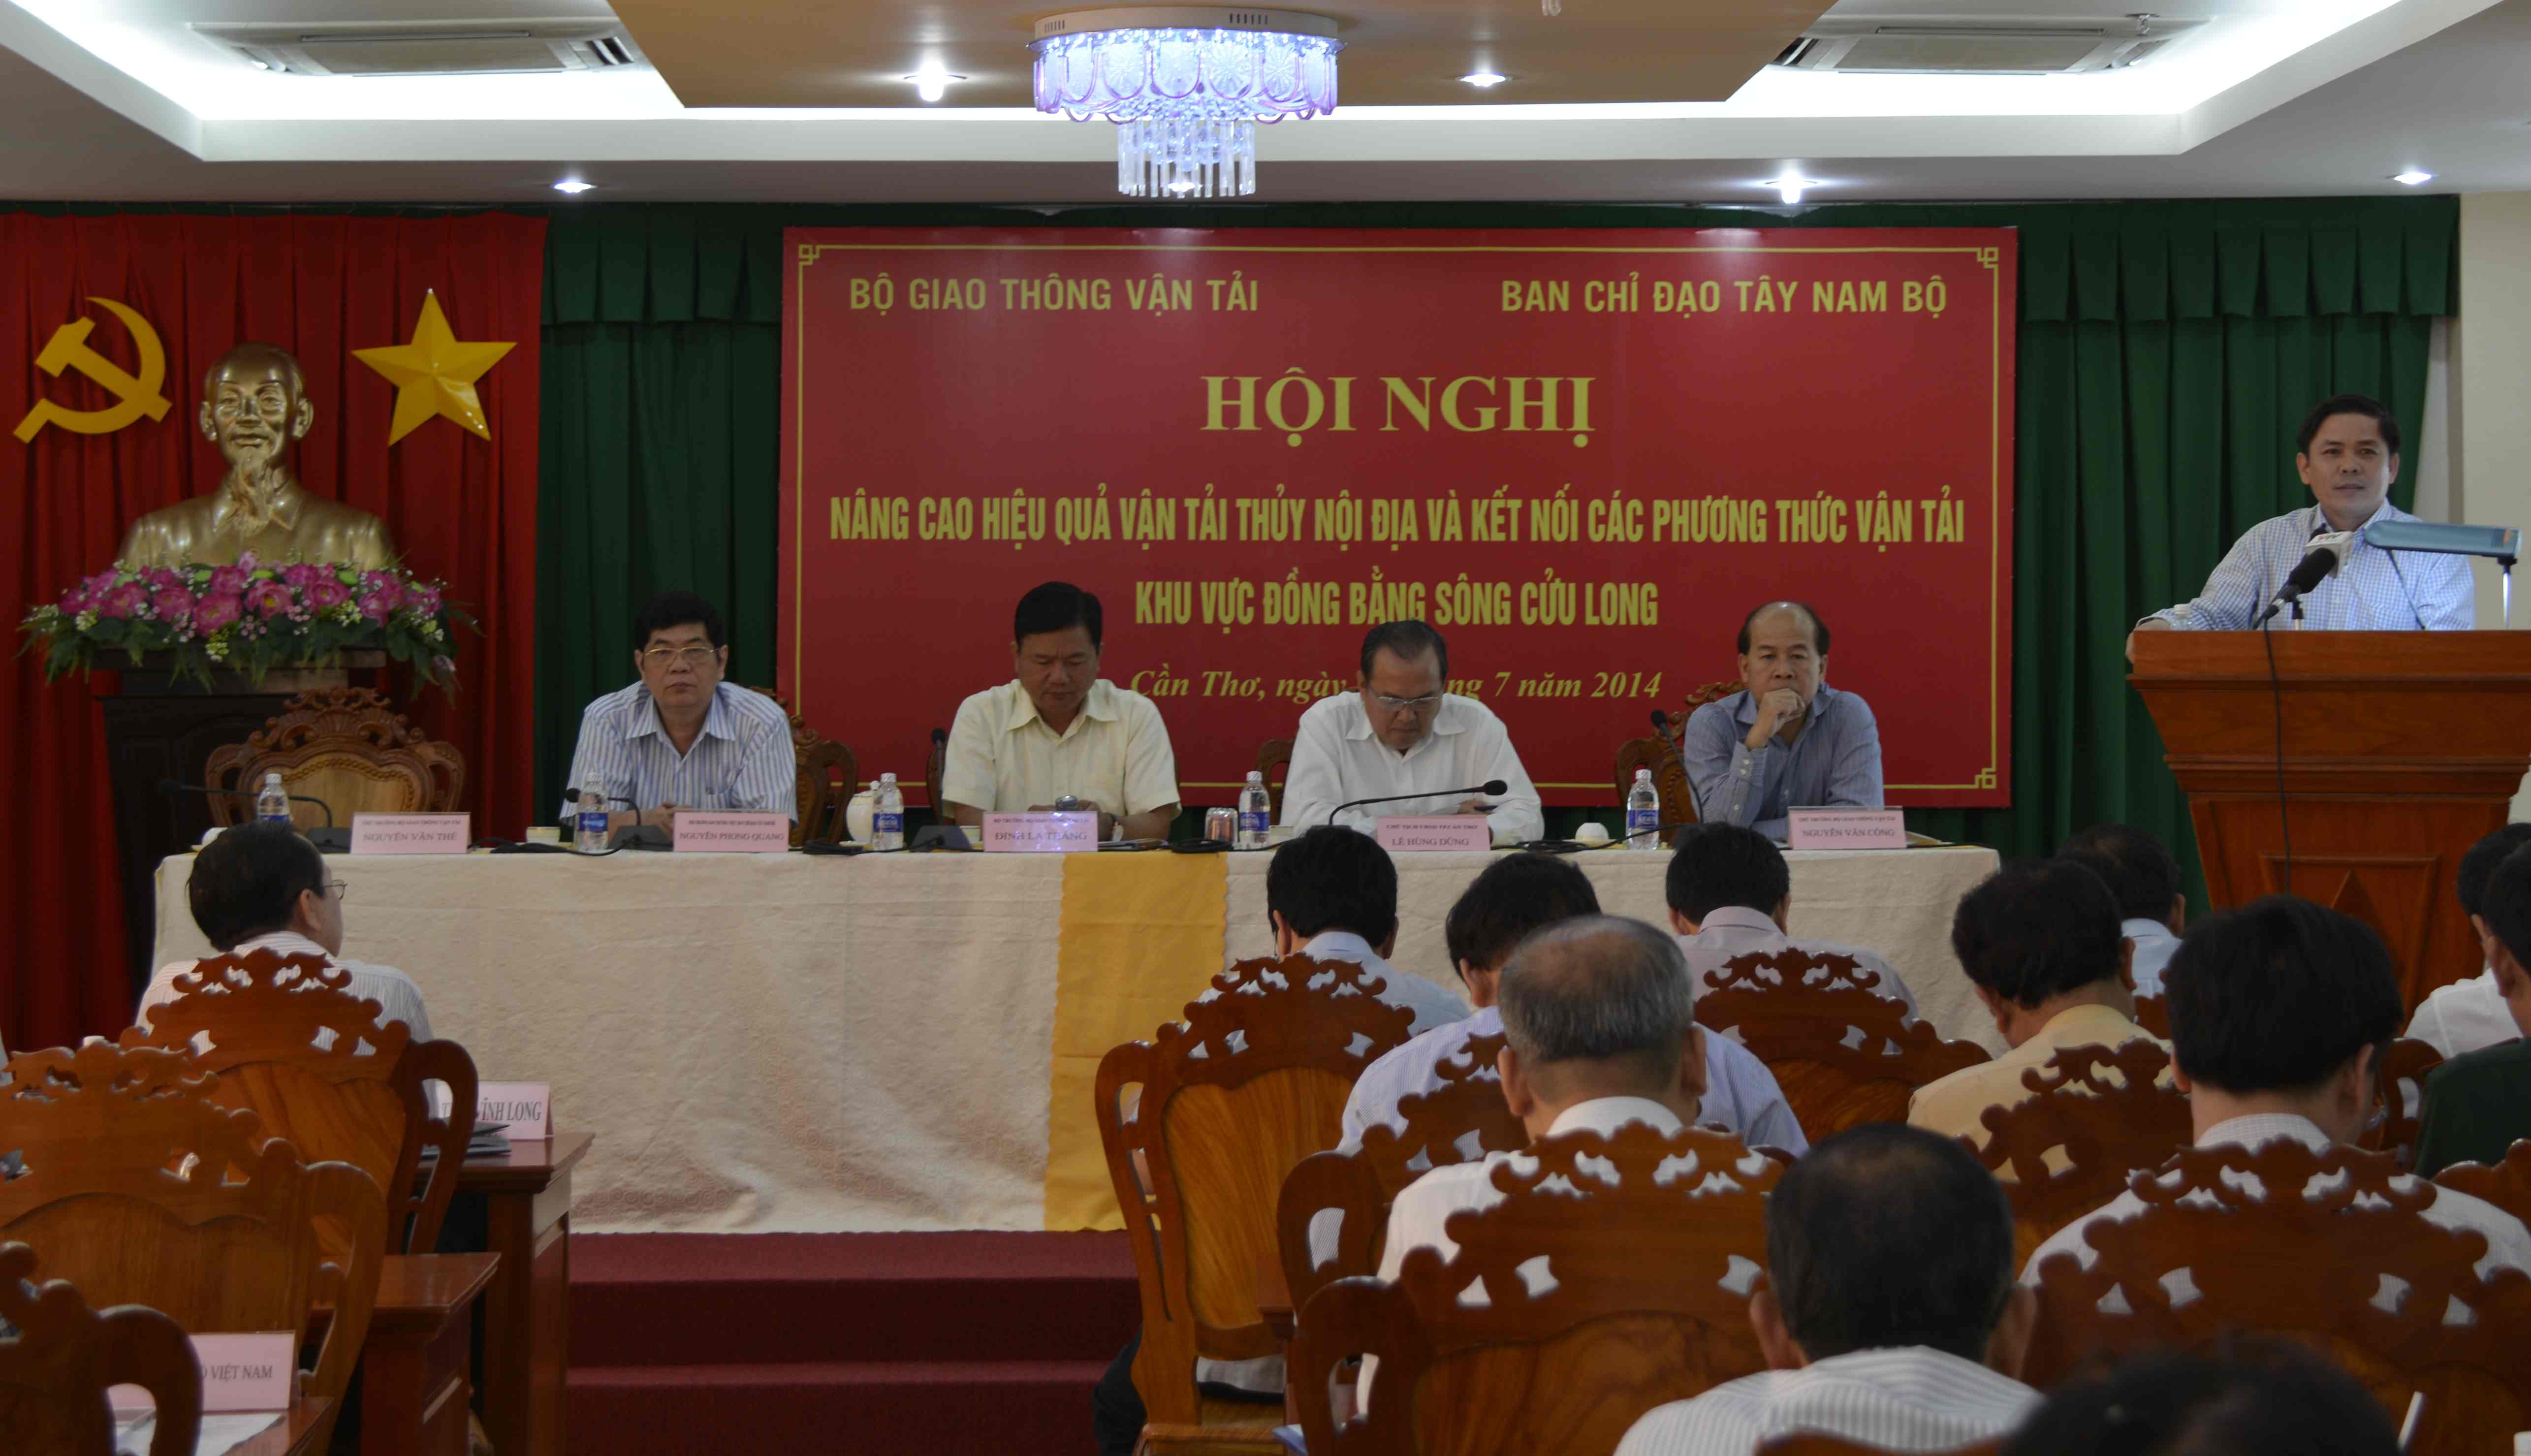 Thứ trưởng Nguyễn Văn Thể phát biểu khai mạc hội nghị.